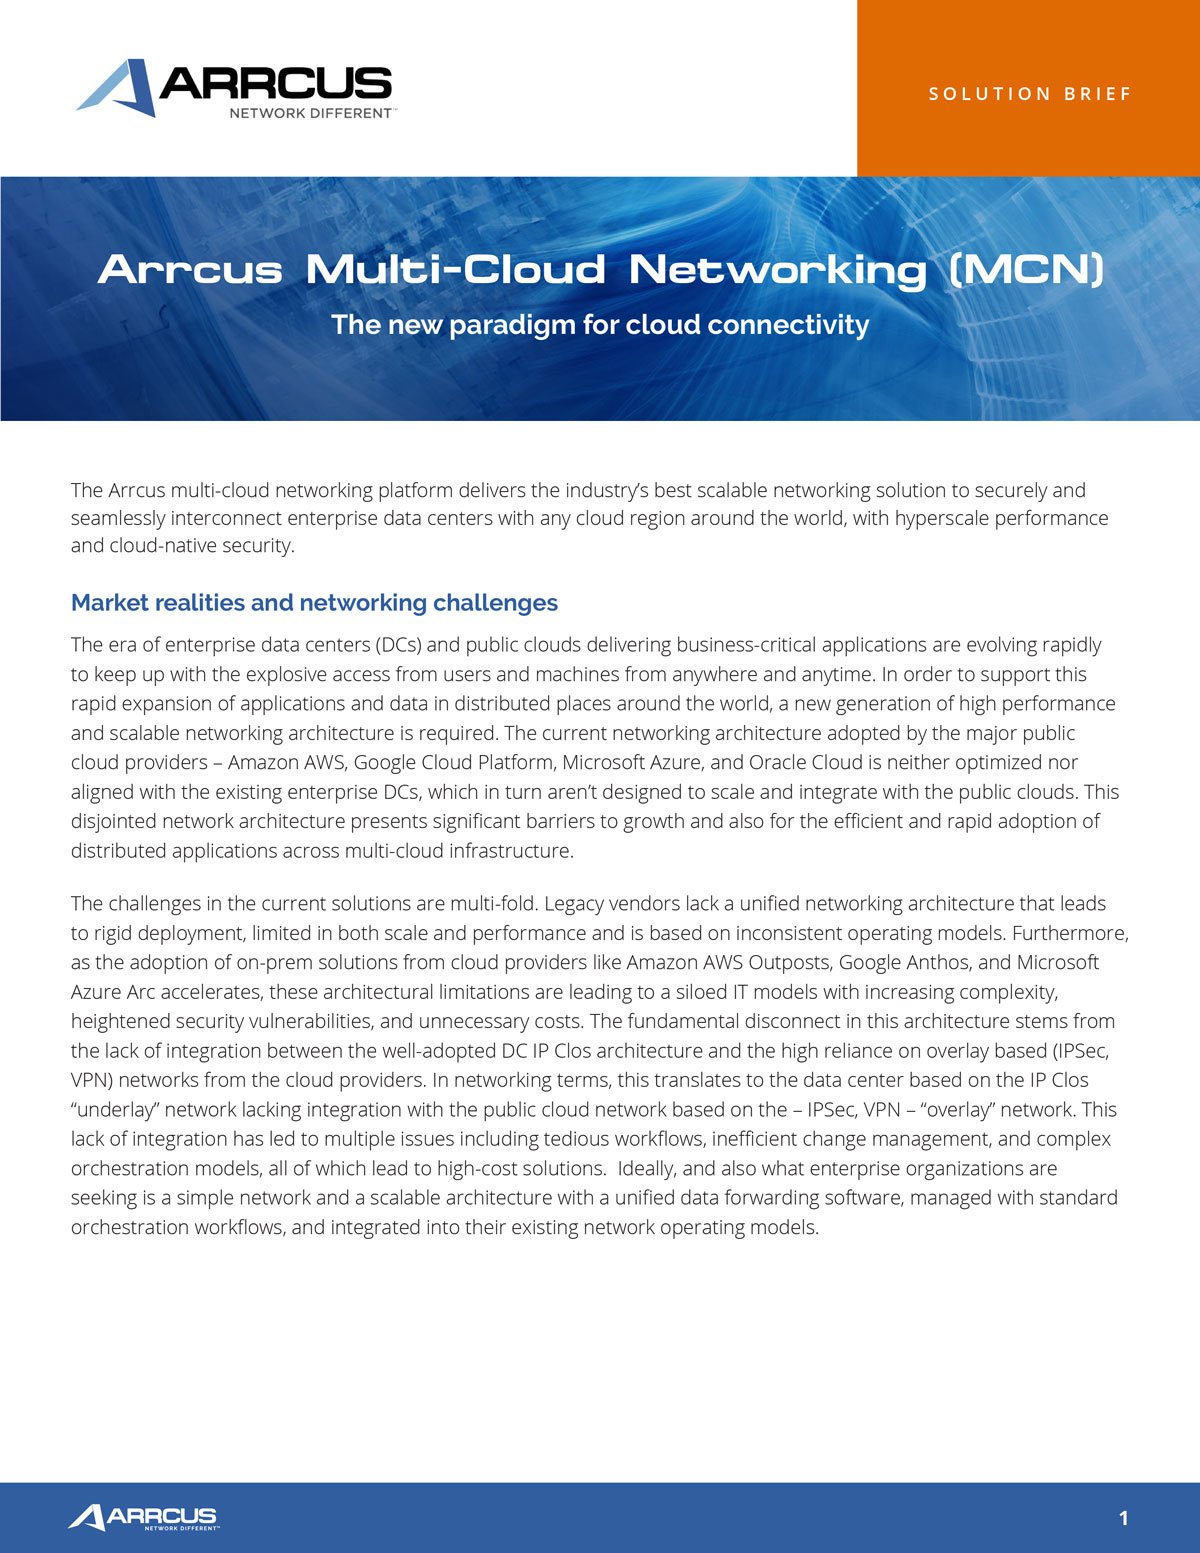 arrcus-mcn-solution-brief-pdf-cover